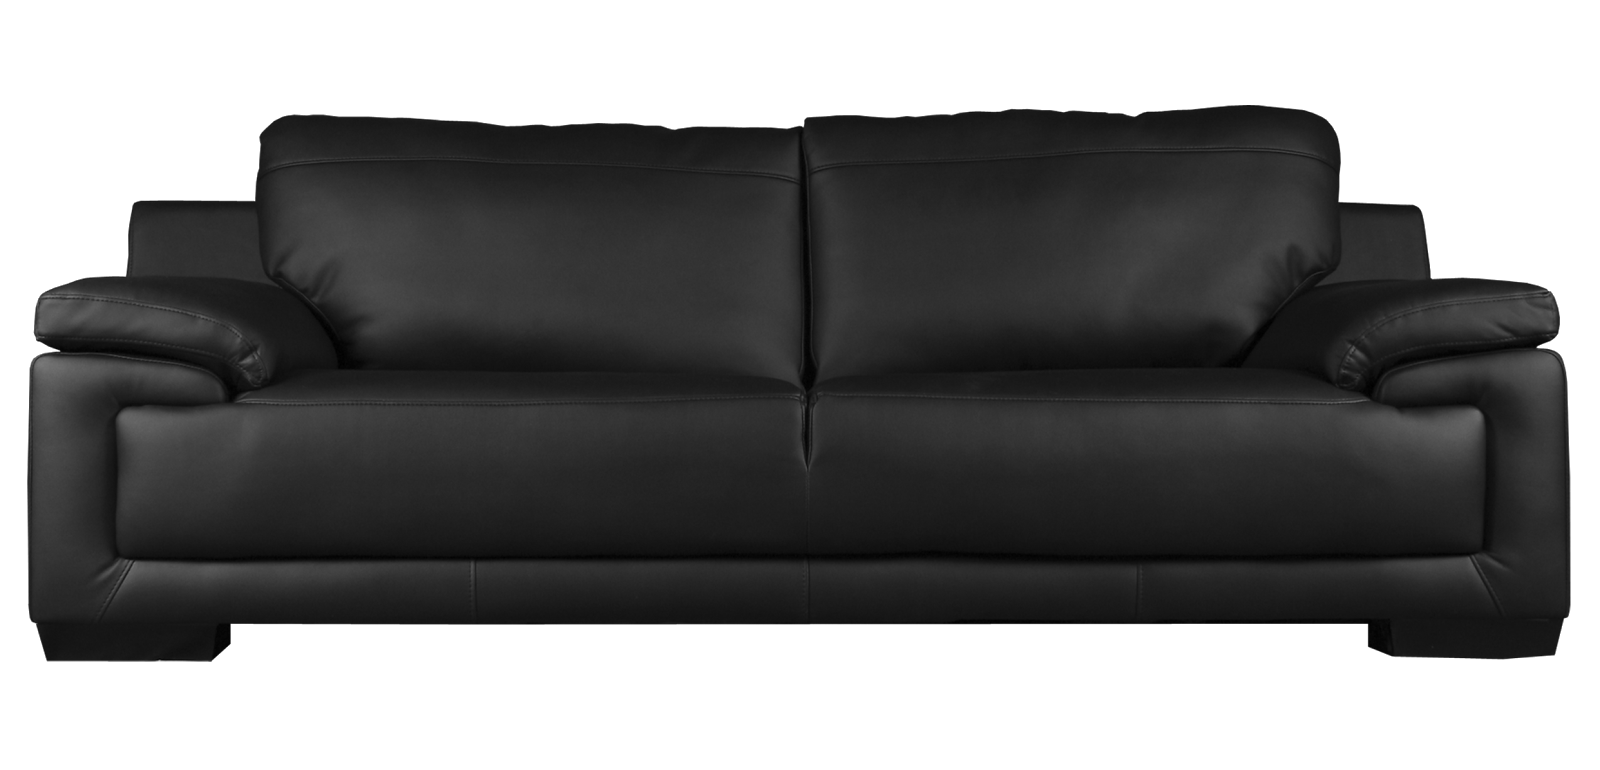 Sofa hitam